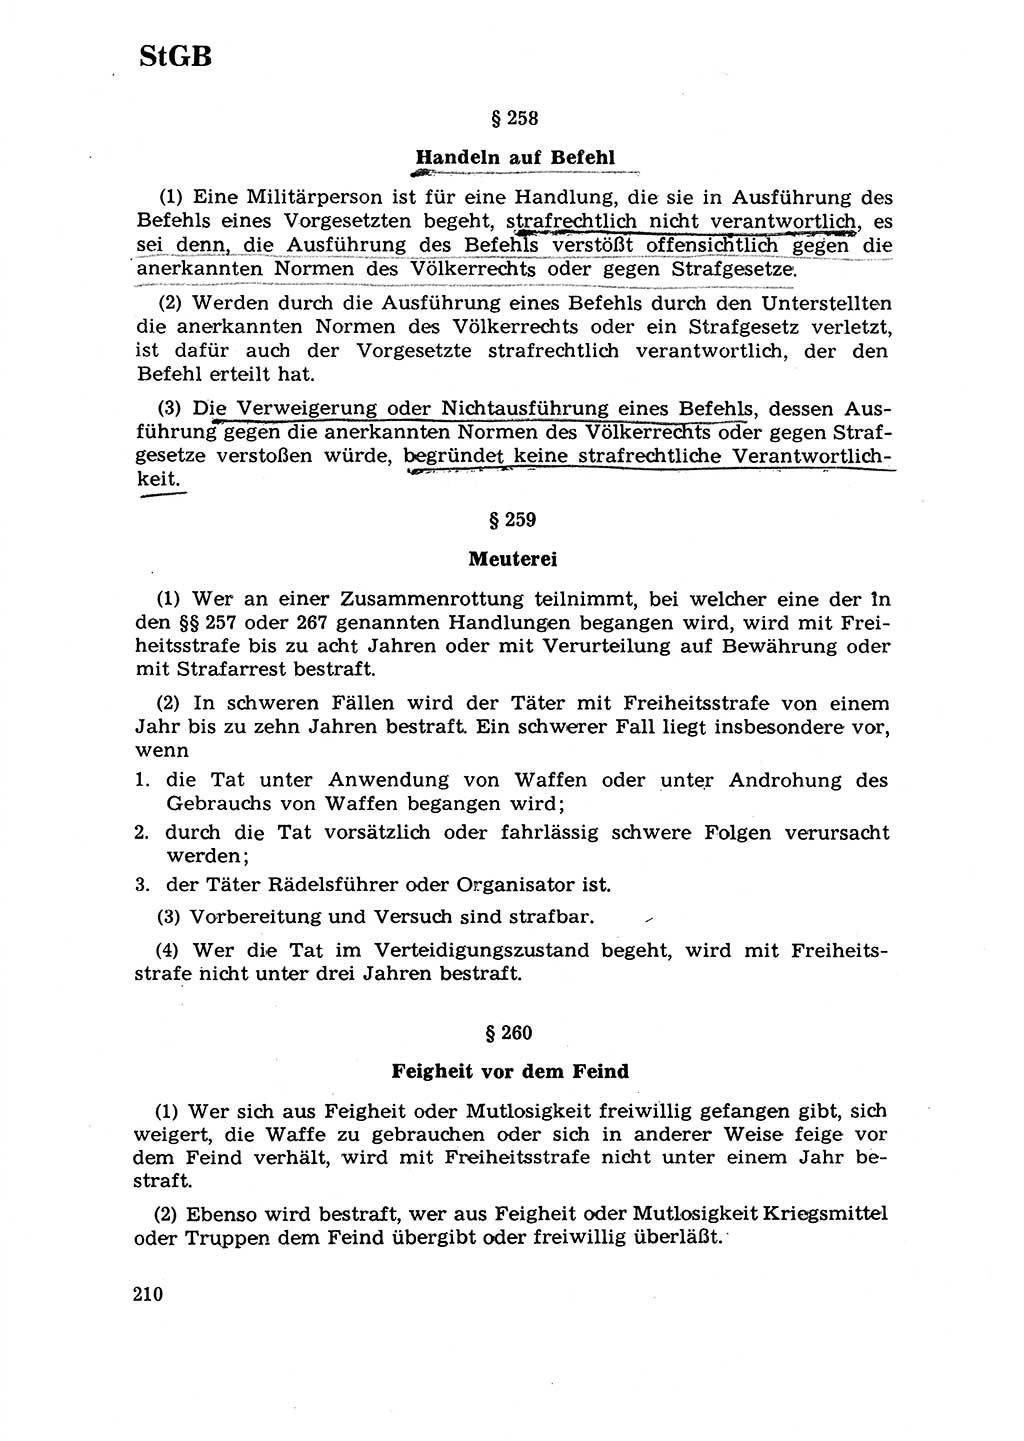 Strafrecht [Deutsche Demokratische Republik (DDR)] 1968, Seite 210 (Strafr. DDR 1968, S. 210)